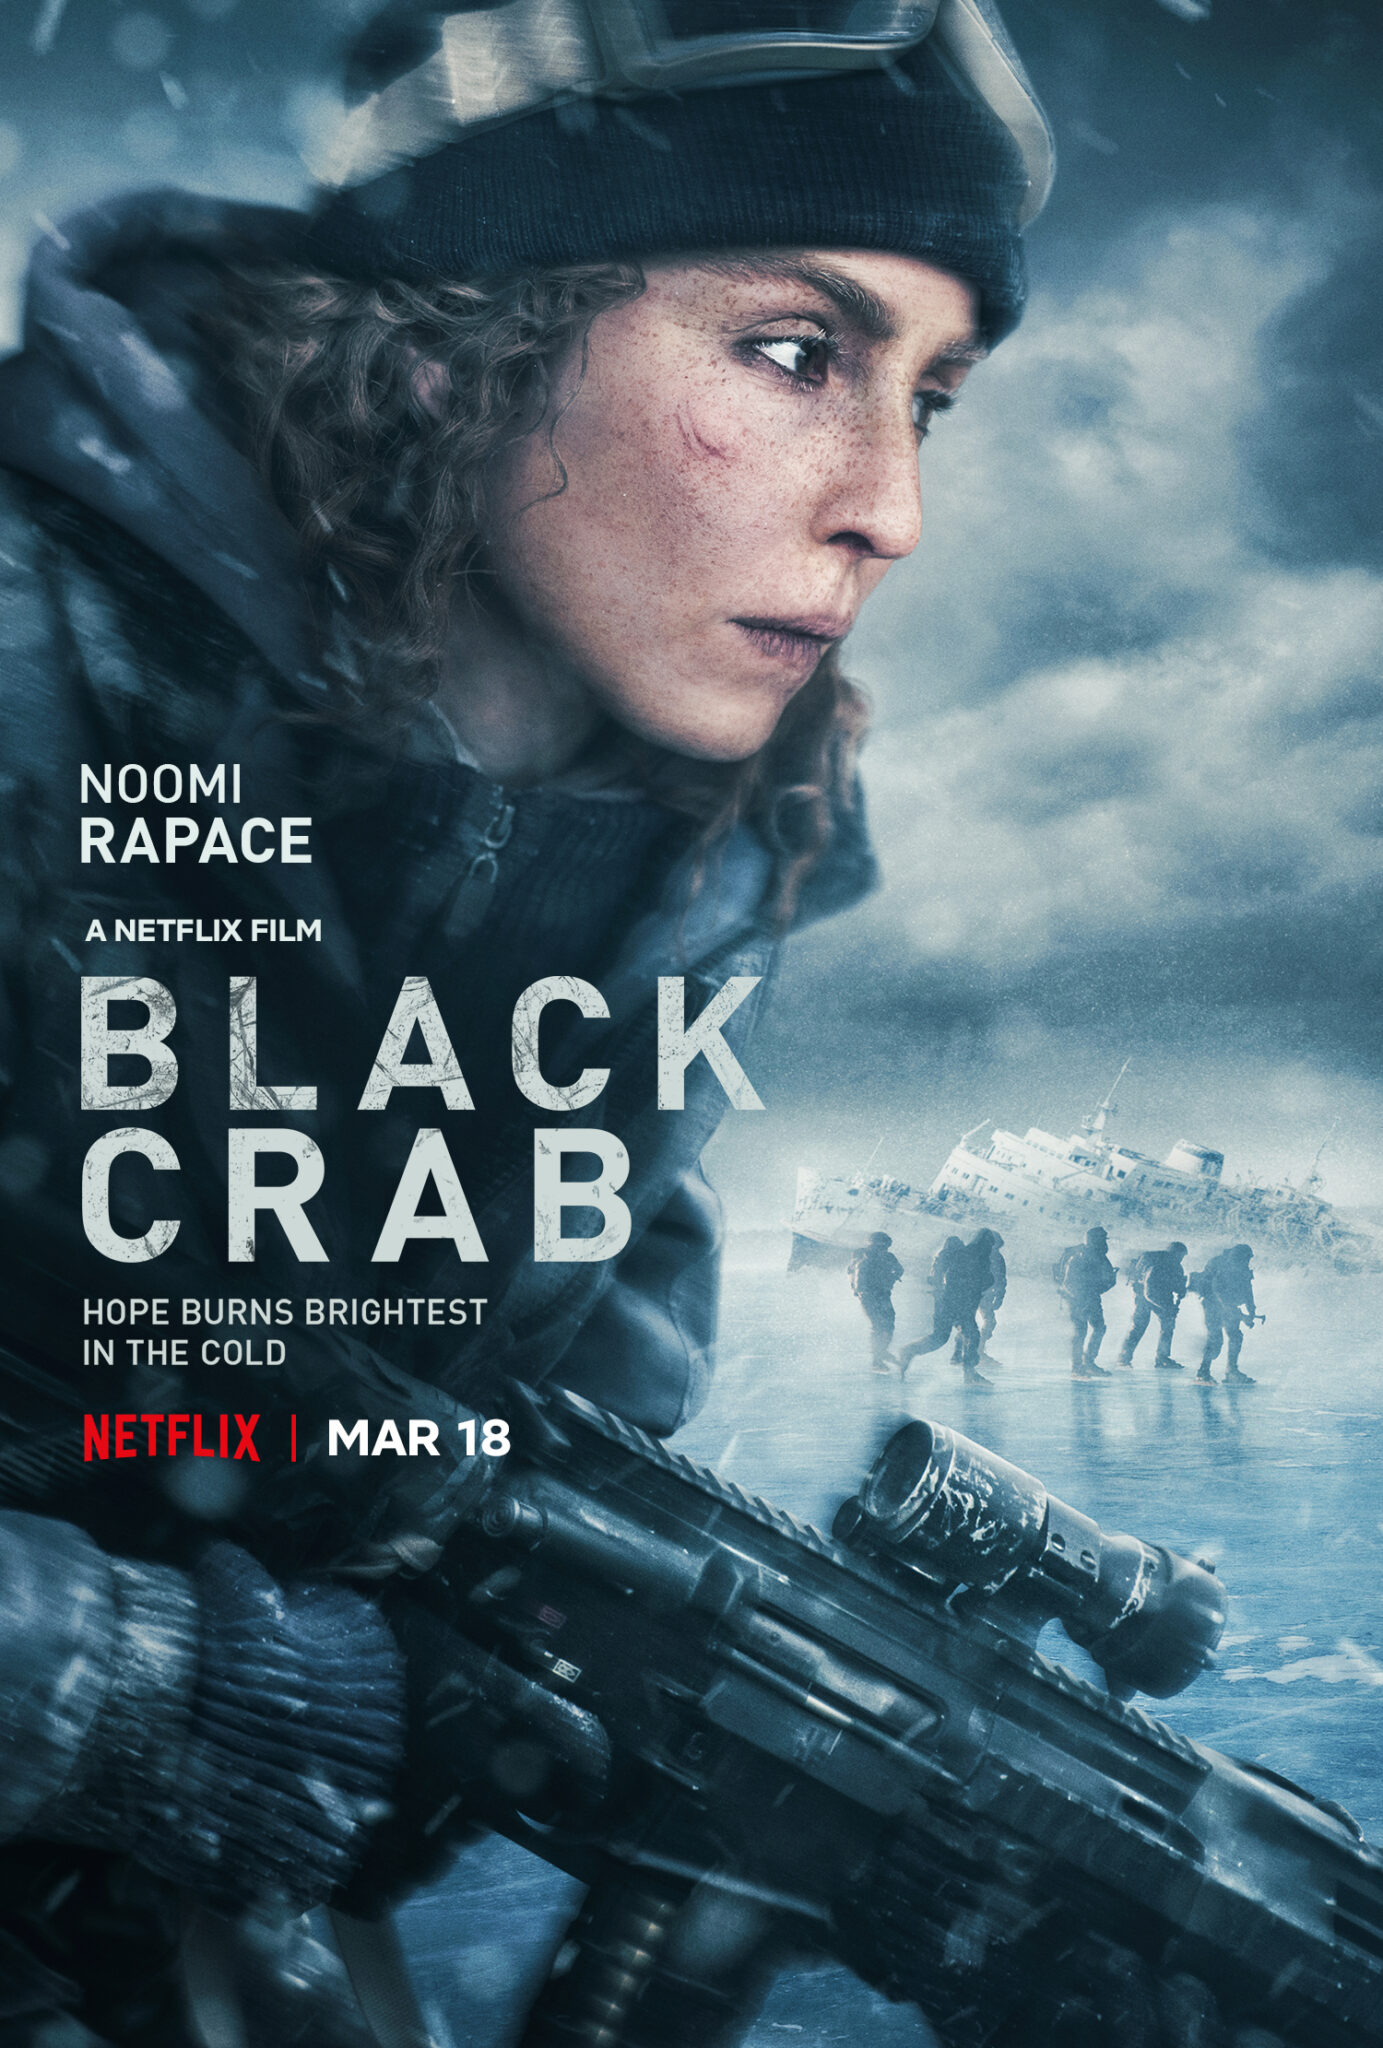 Das englische Poster zu Operation Schwarze Krabbe zeigt die Protagonistin in groß im Vordergrund und hinter ihr den zugefrorenen See, auf dem sechs Personen zu sehen sind. Ganz hinten sieht man ein gekentertes Schiff im Eis.